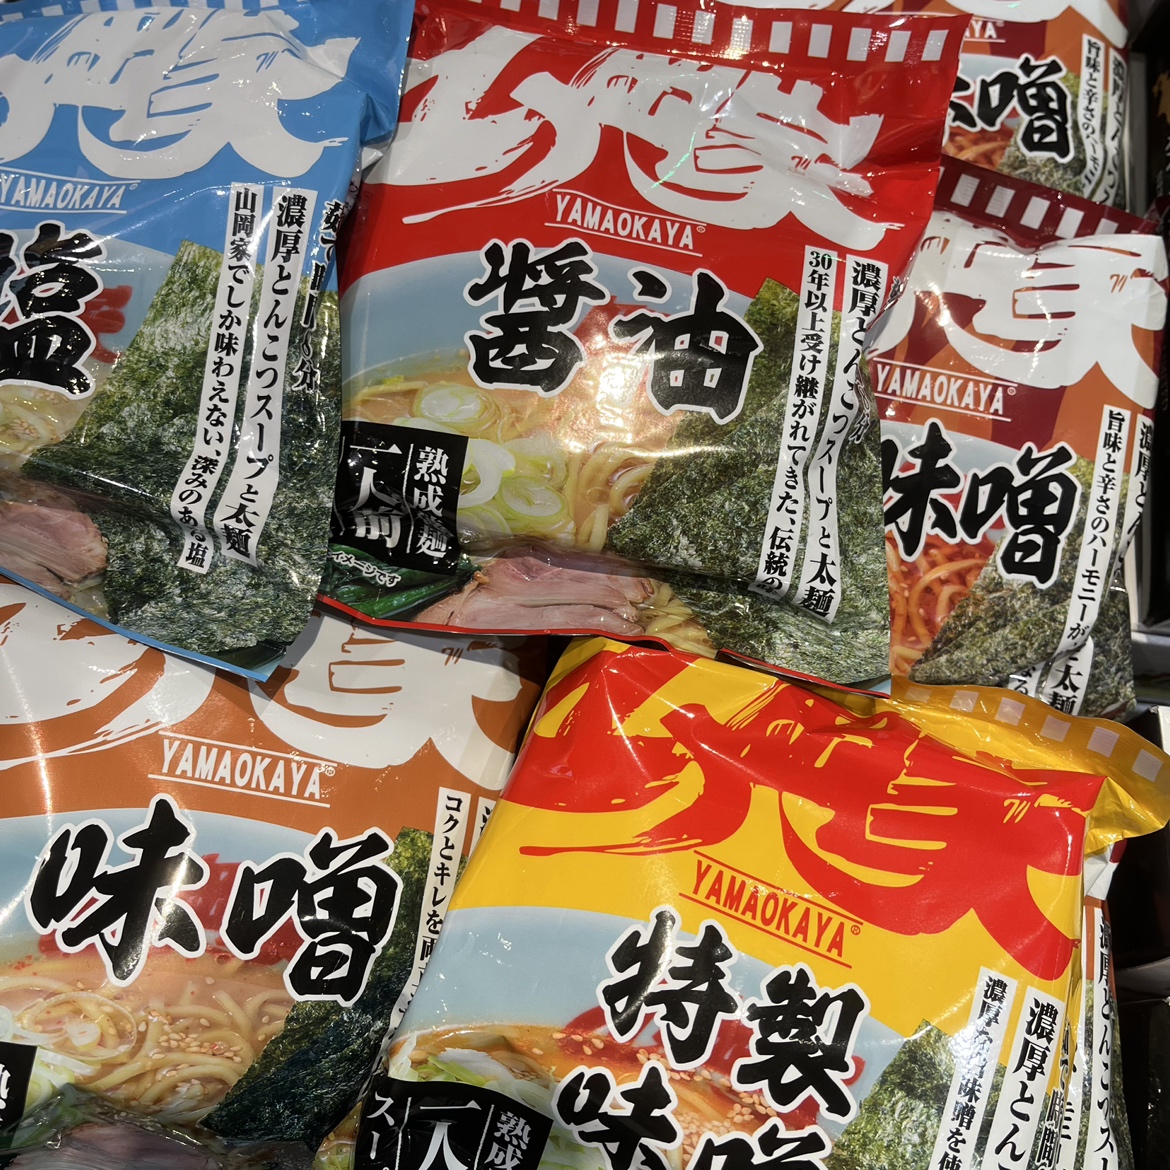 人気ラーメン店「山岡家」の袋麺が人気です！